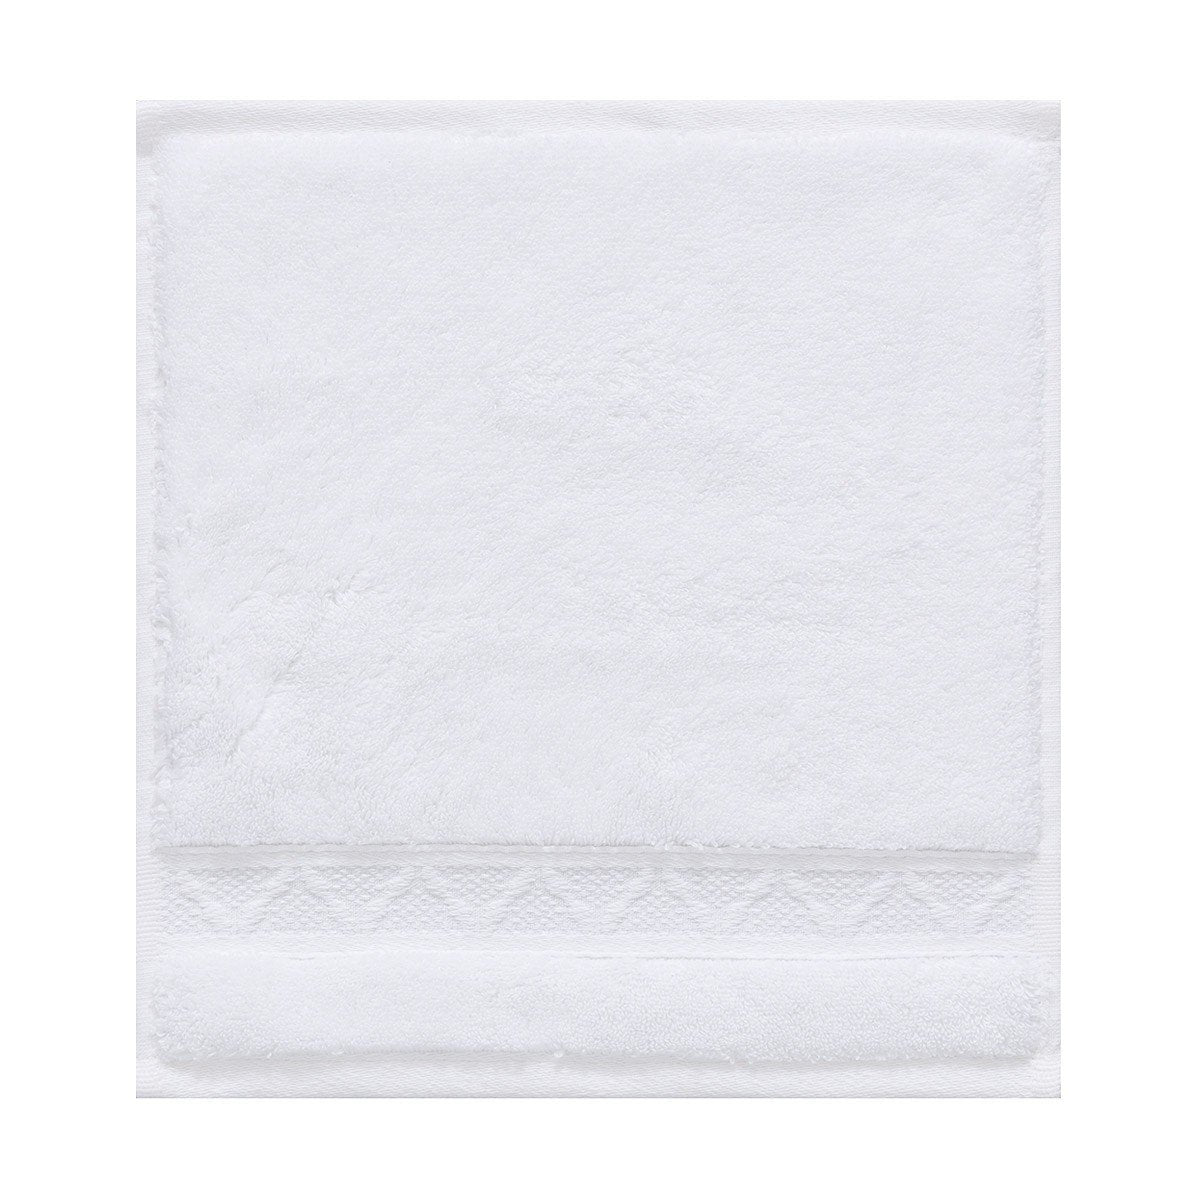 Le Jacquard Français | Caresse White Bath Collection | Fig Linens - Towels